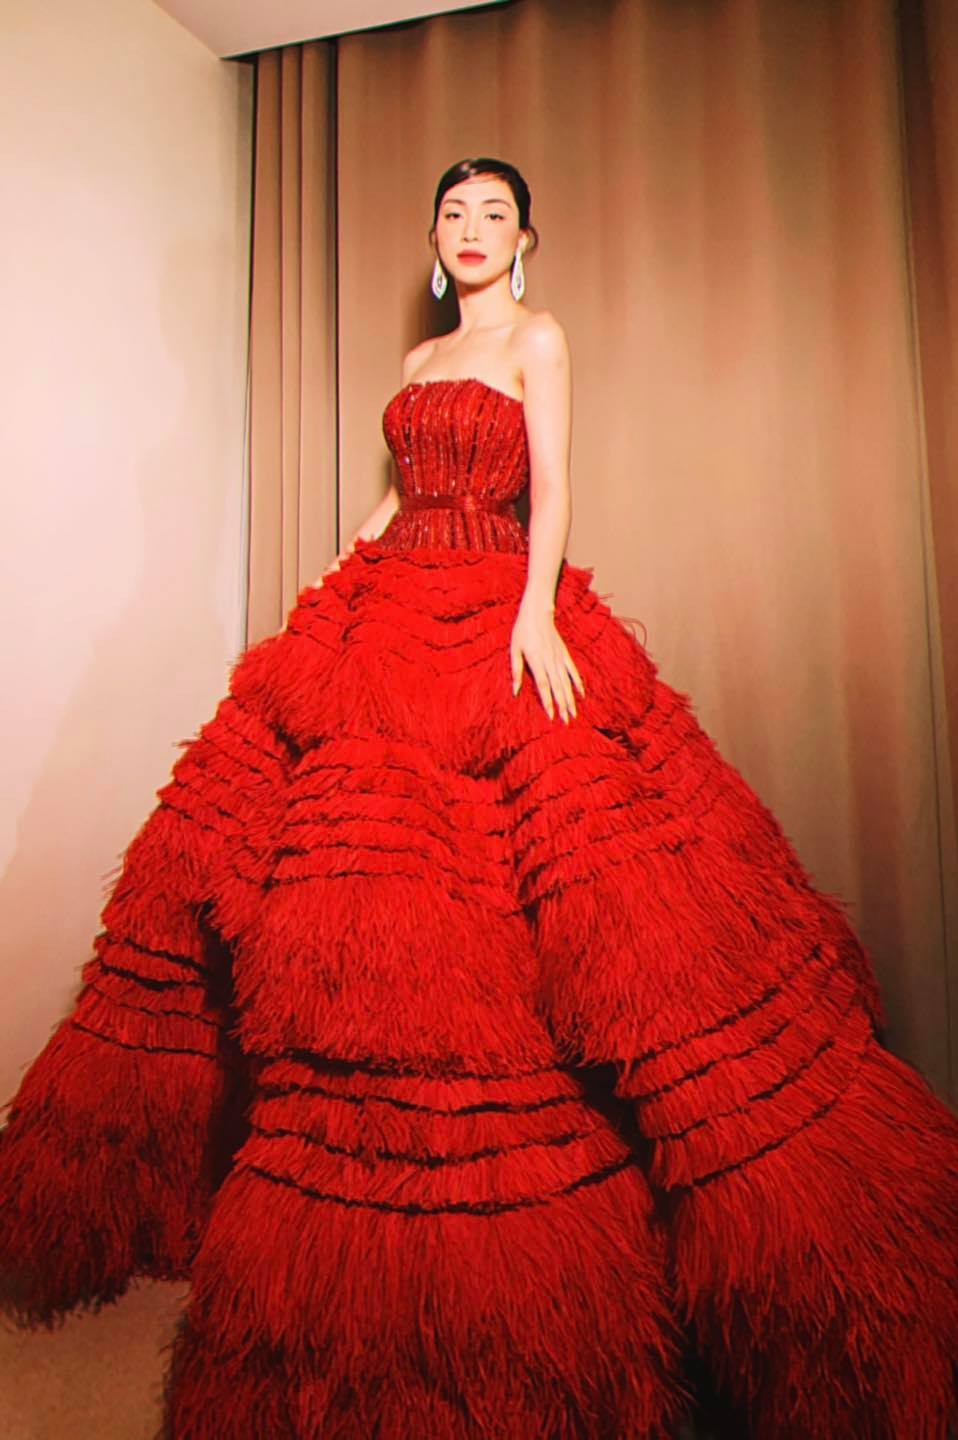  
Chiếc váy đỏ giúp Hòa Minzy nổi bật khi dự sự kiện. (Ảnh: FBNV)